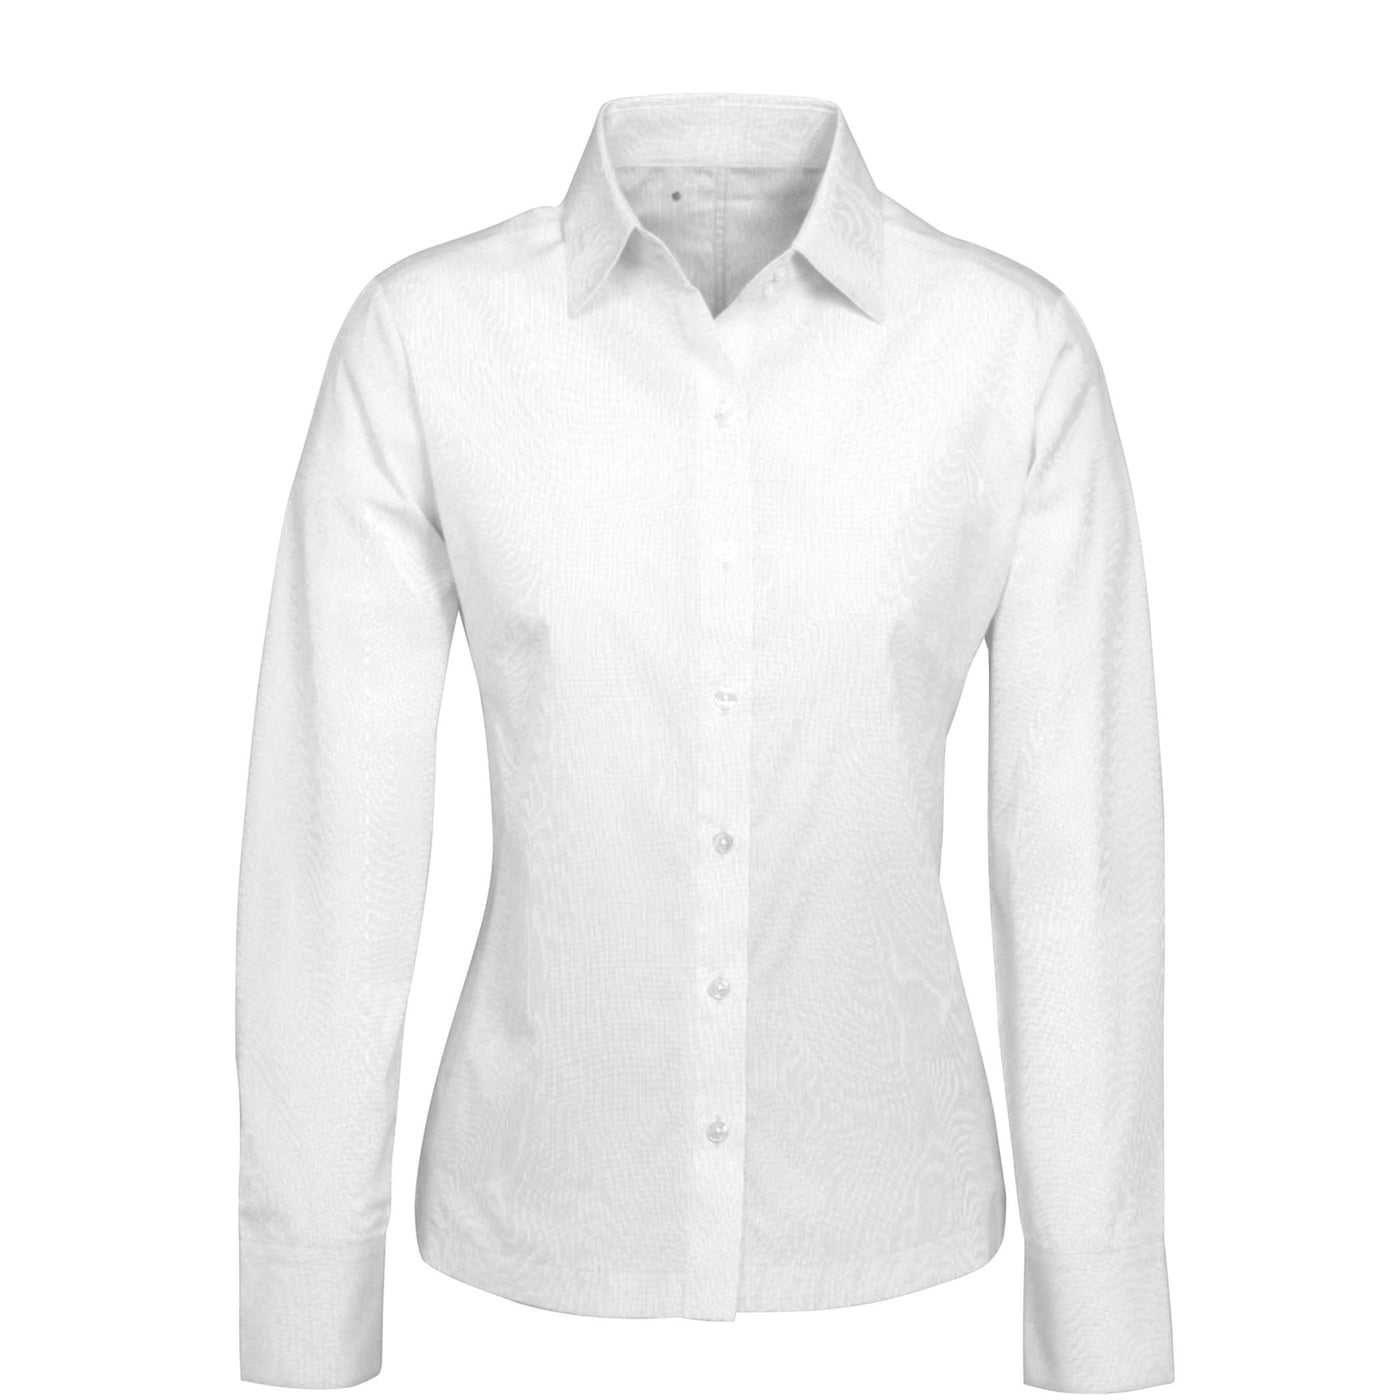 Biz Collection Ambassador Shirt Long Sleeve - Womens